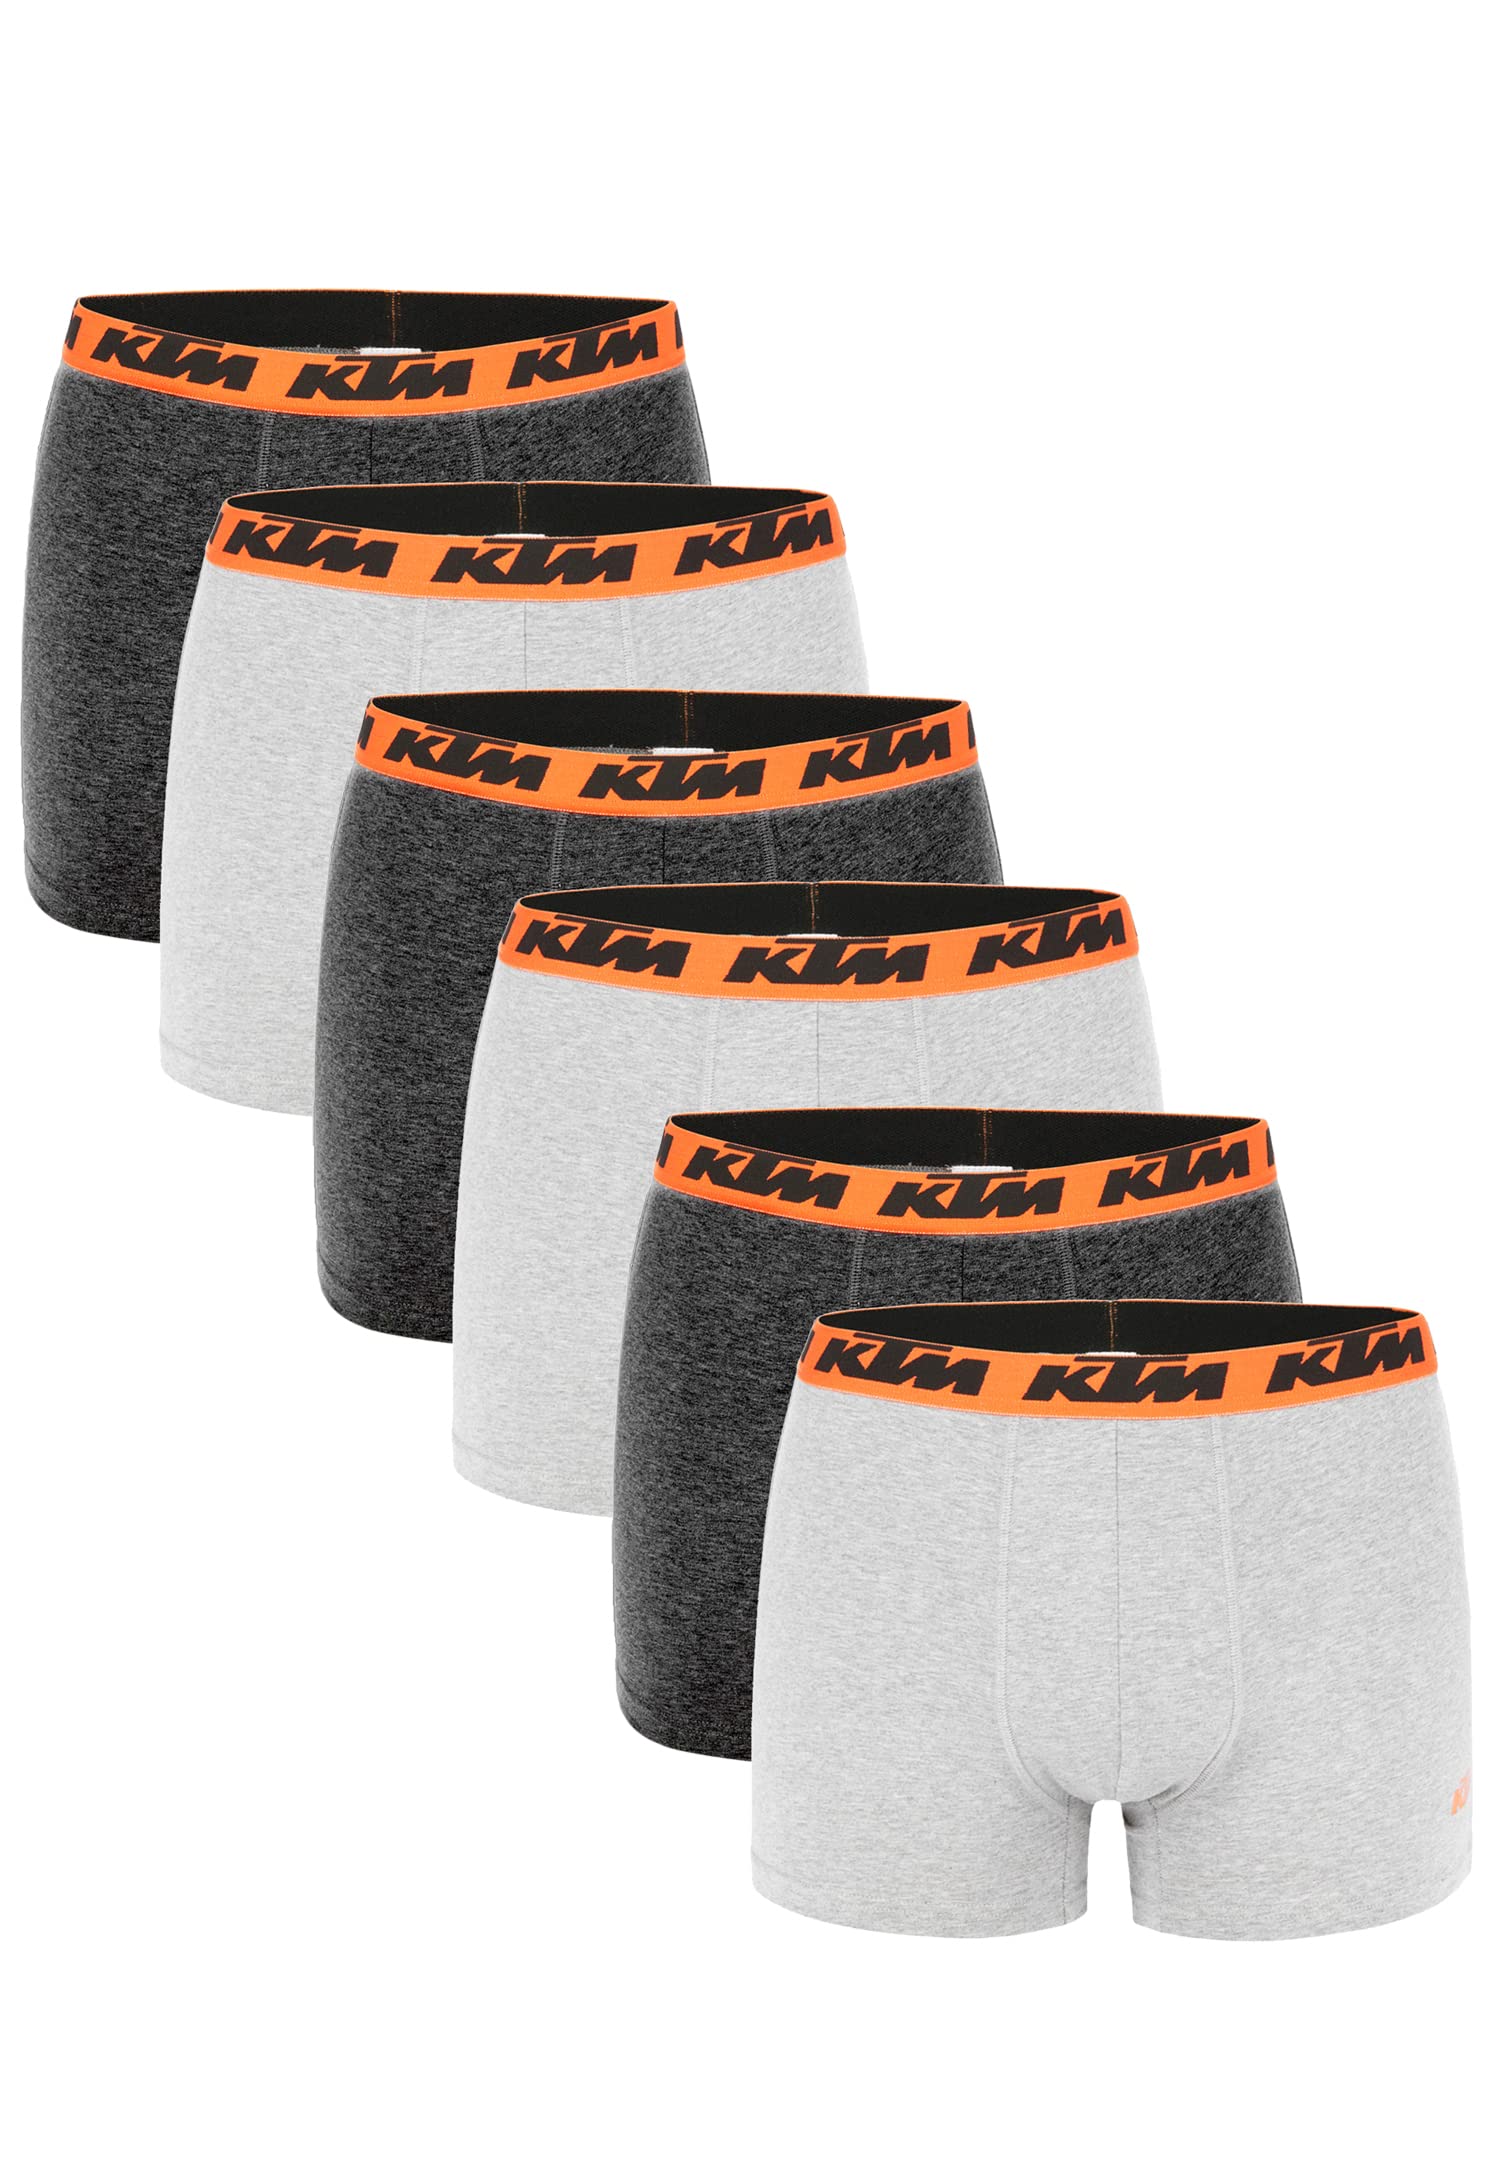 KTM by Freegun Boxershorts für Herren Unterwäsche Pant Men´s Boxer 6 er Pack, Farbe:Dark Grey / Light Grey2, Bekleidungsgröße:XL